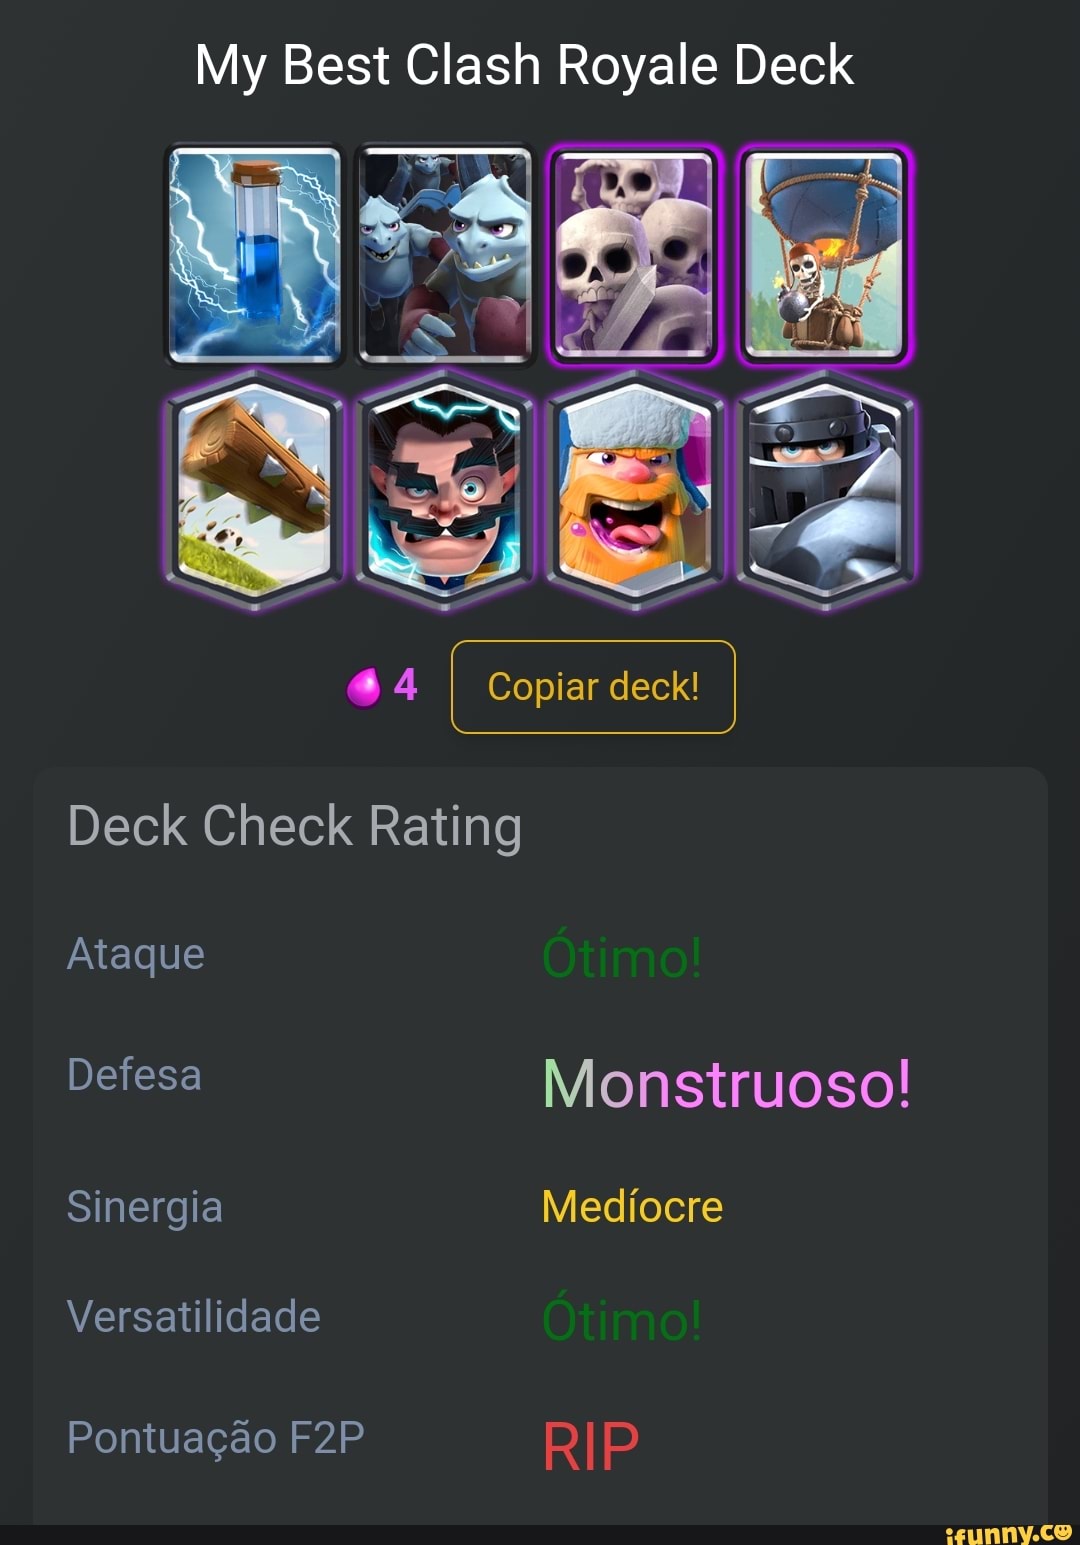 My Best Clash Royale Deck 44 I Copiar deck! Deck Check Rating Ataque Bom  Defesa Monstruoso! Sinergia Bom Versatilidade Bom Pontuação Ruim - iFunny  Brazil